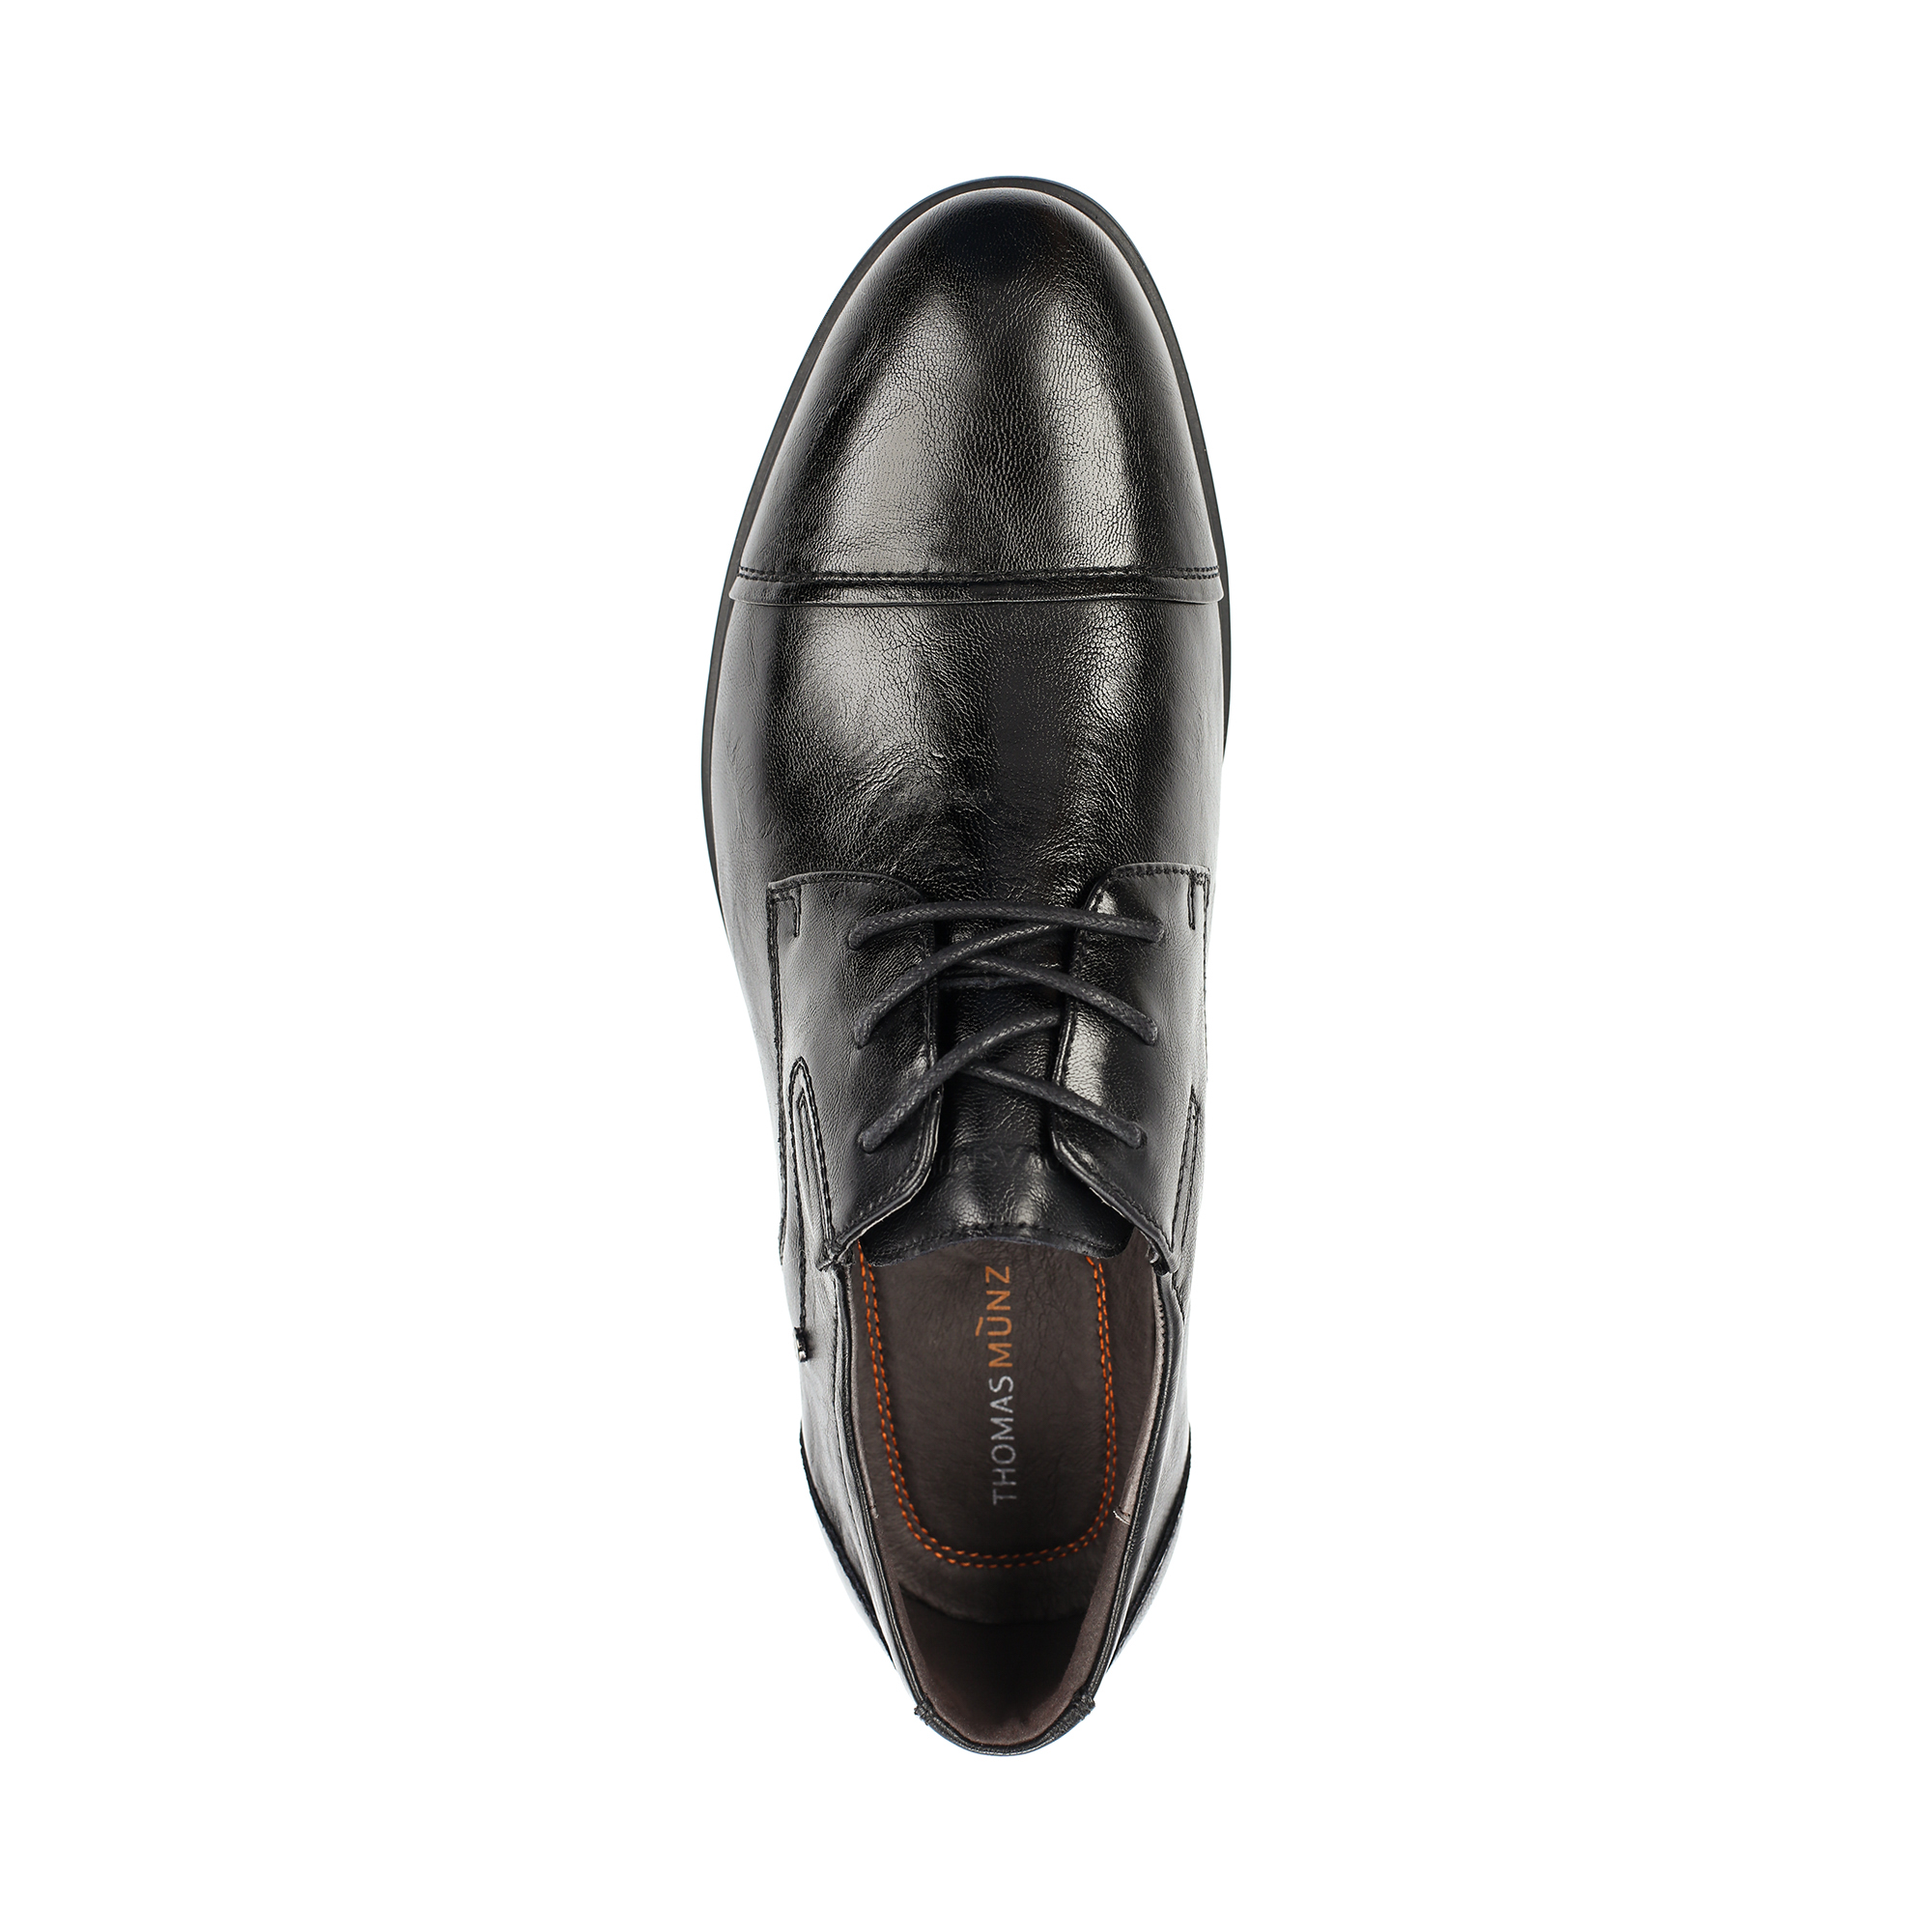 Туфли/полуботинки Thomas Munz 098-973A-1602, цвет черный, размер 40 - фото 5